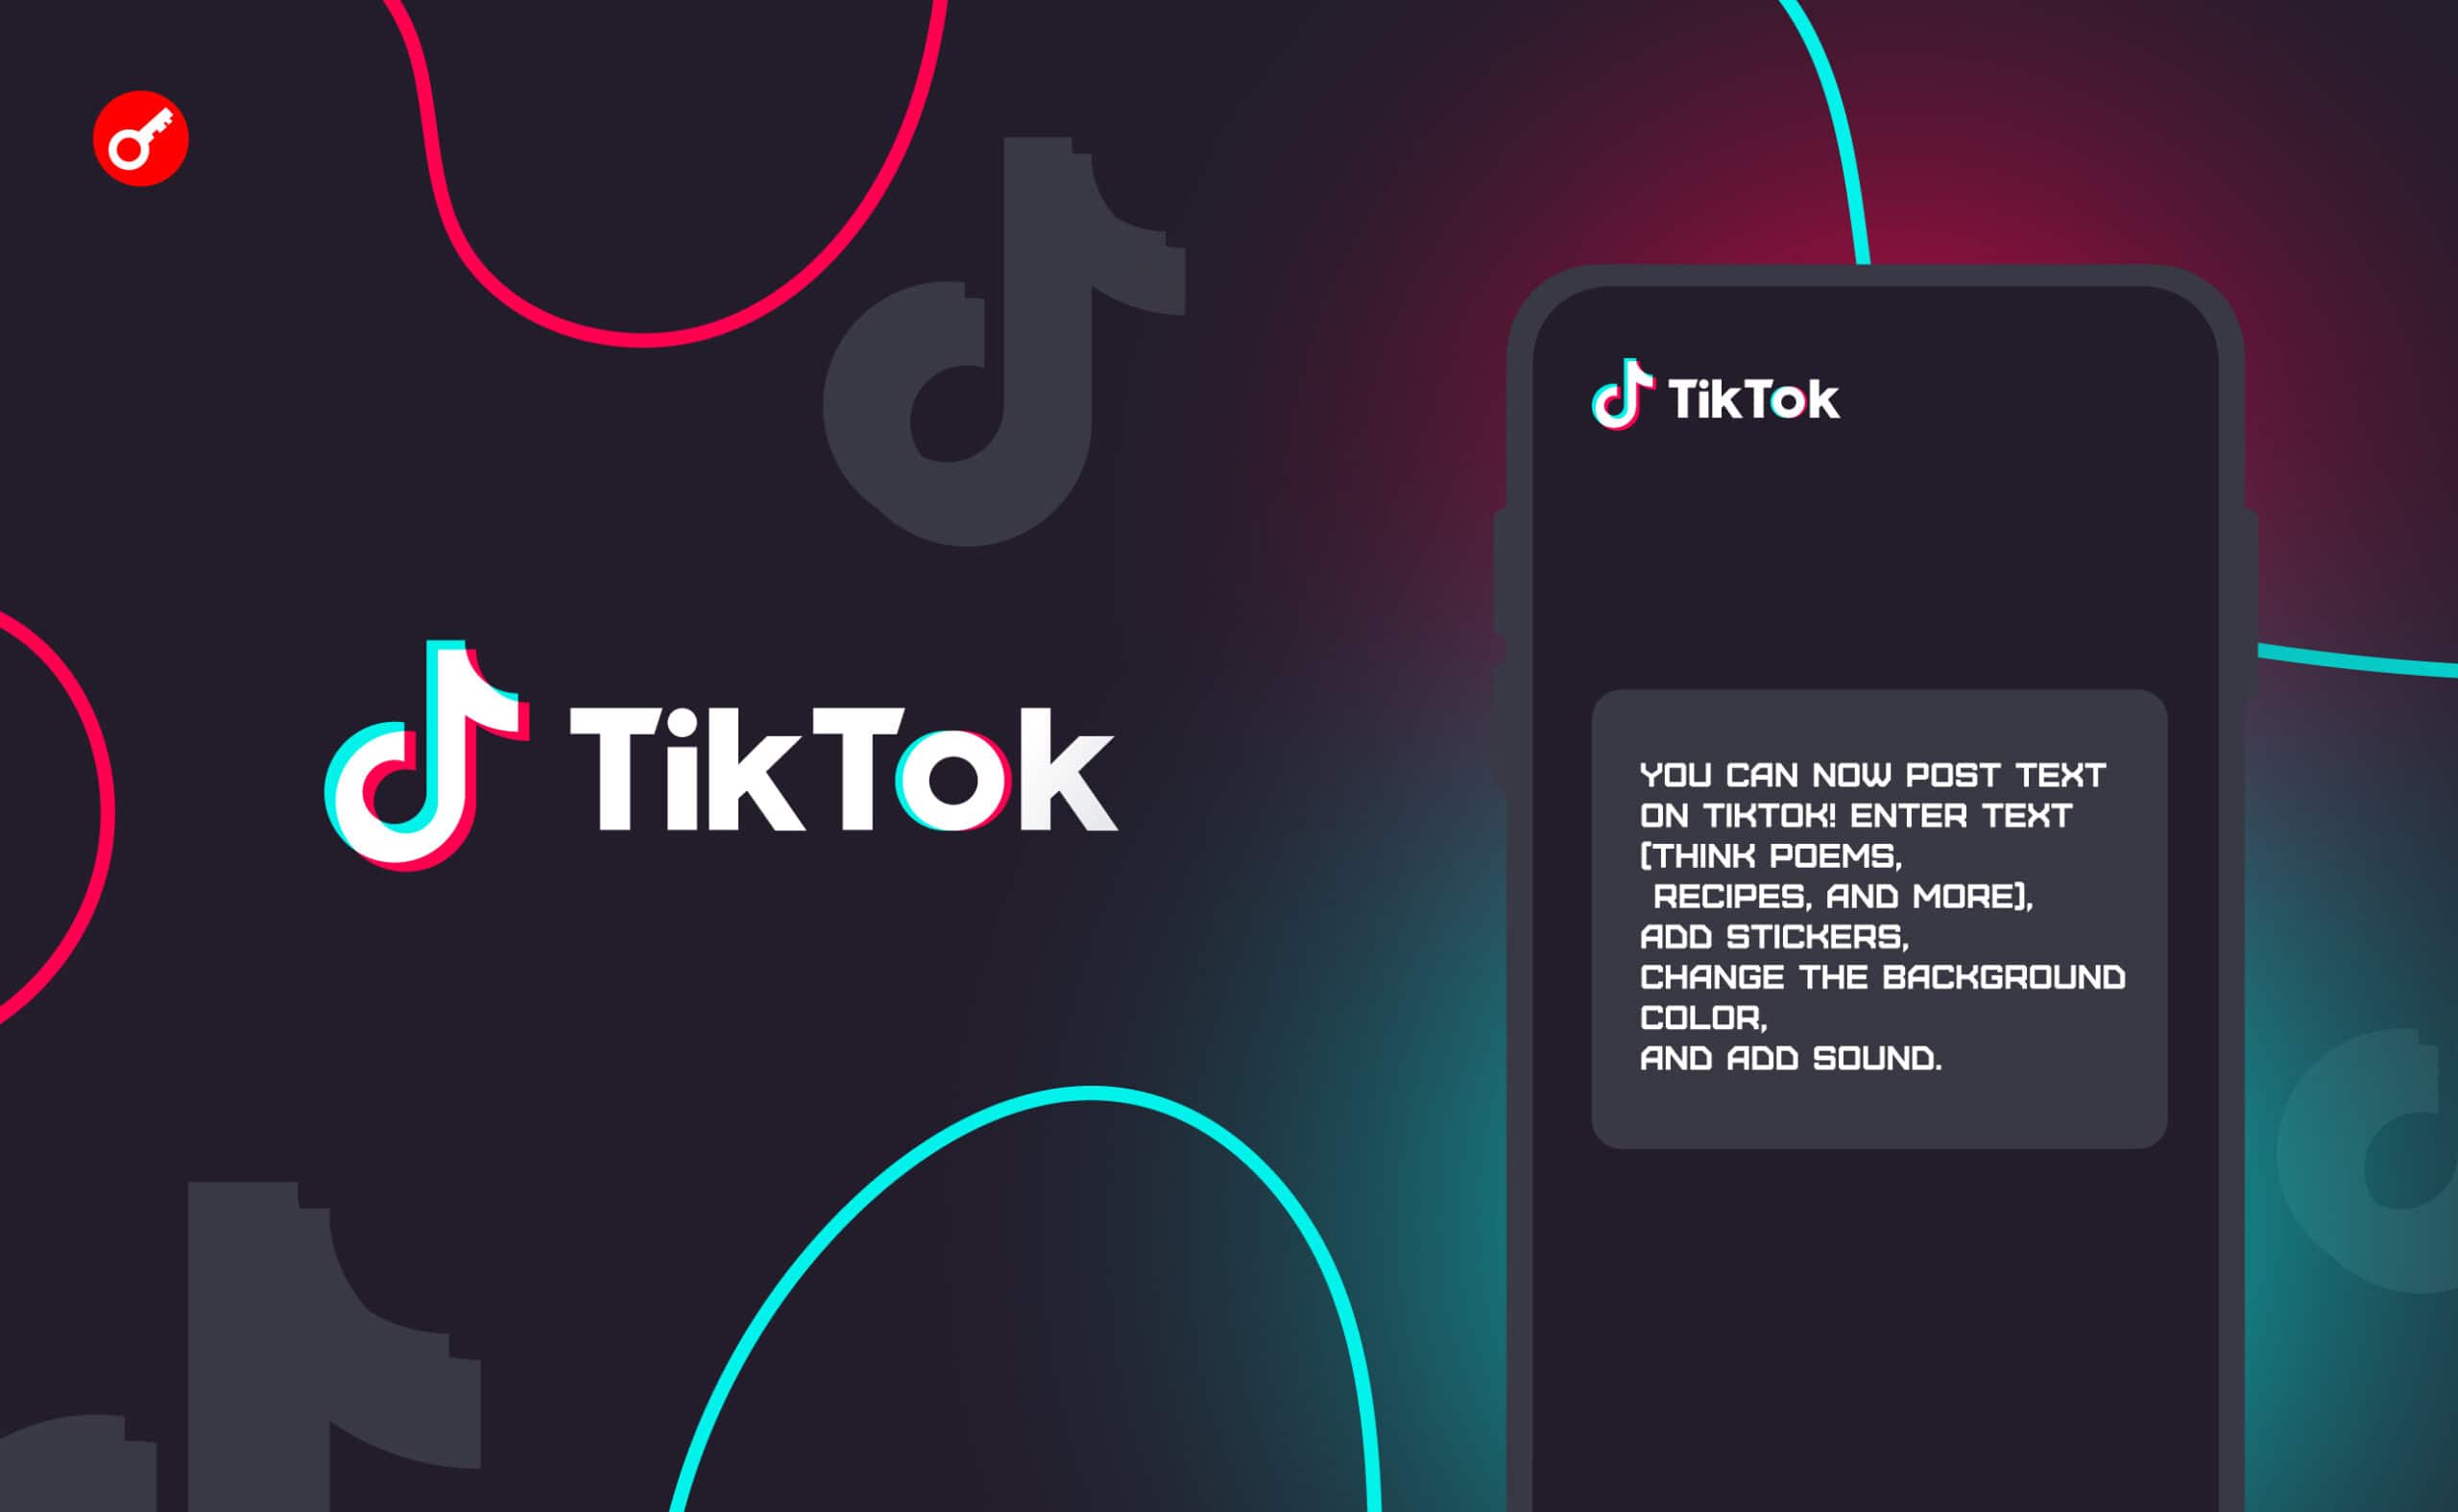 TikTok додав функцію постингу текстових повідомлень. Головний колаж новини.